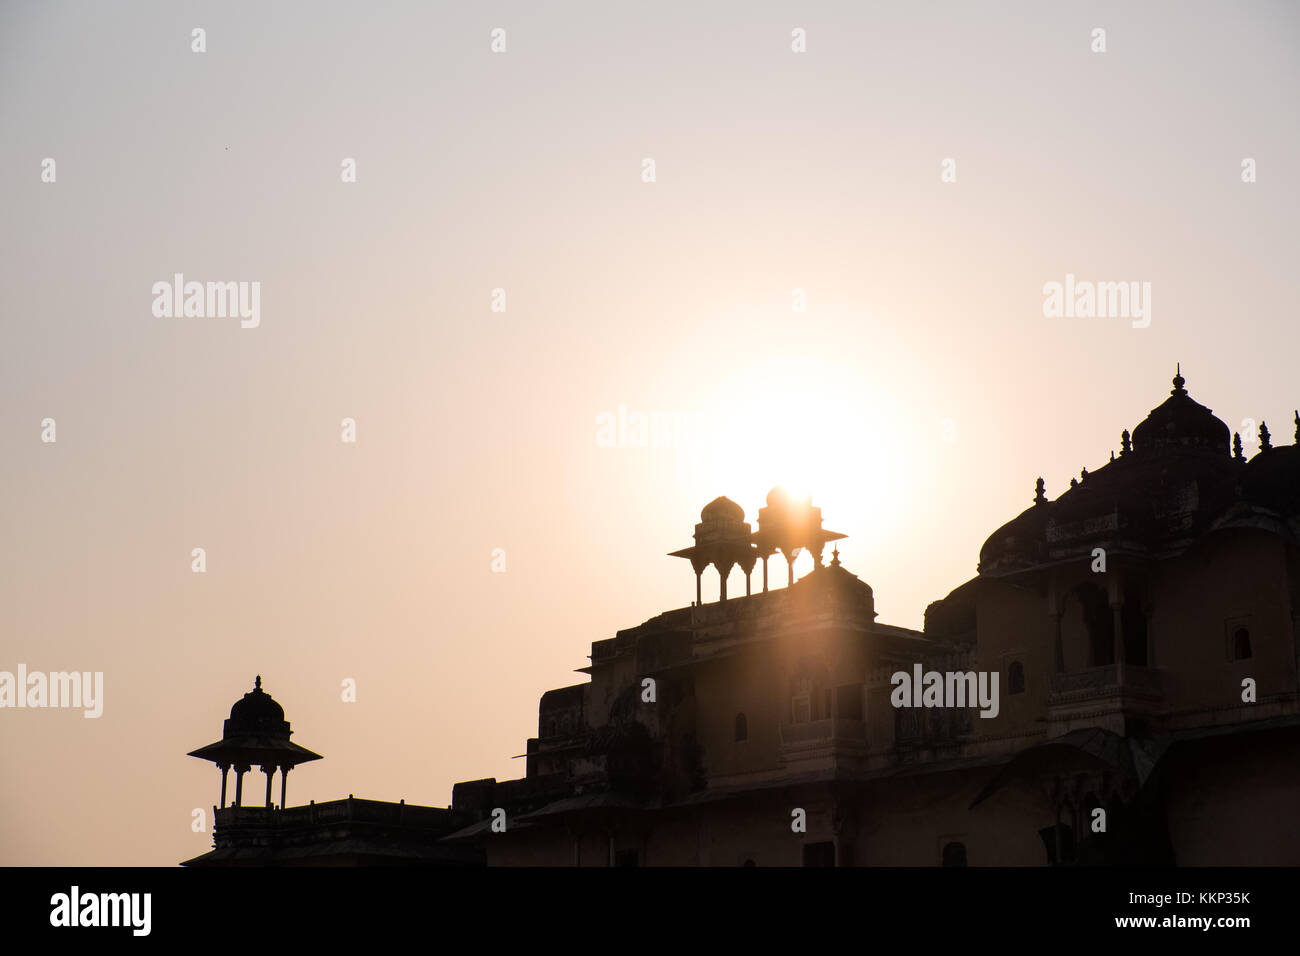 Les tourelles et les coupoles d'un palais indien contre un coucher de soleil, Bundi, Rajasthan, Inde Banque D'Images